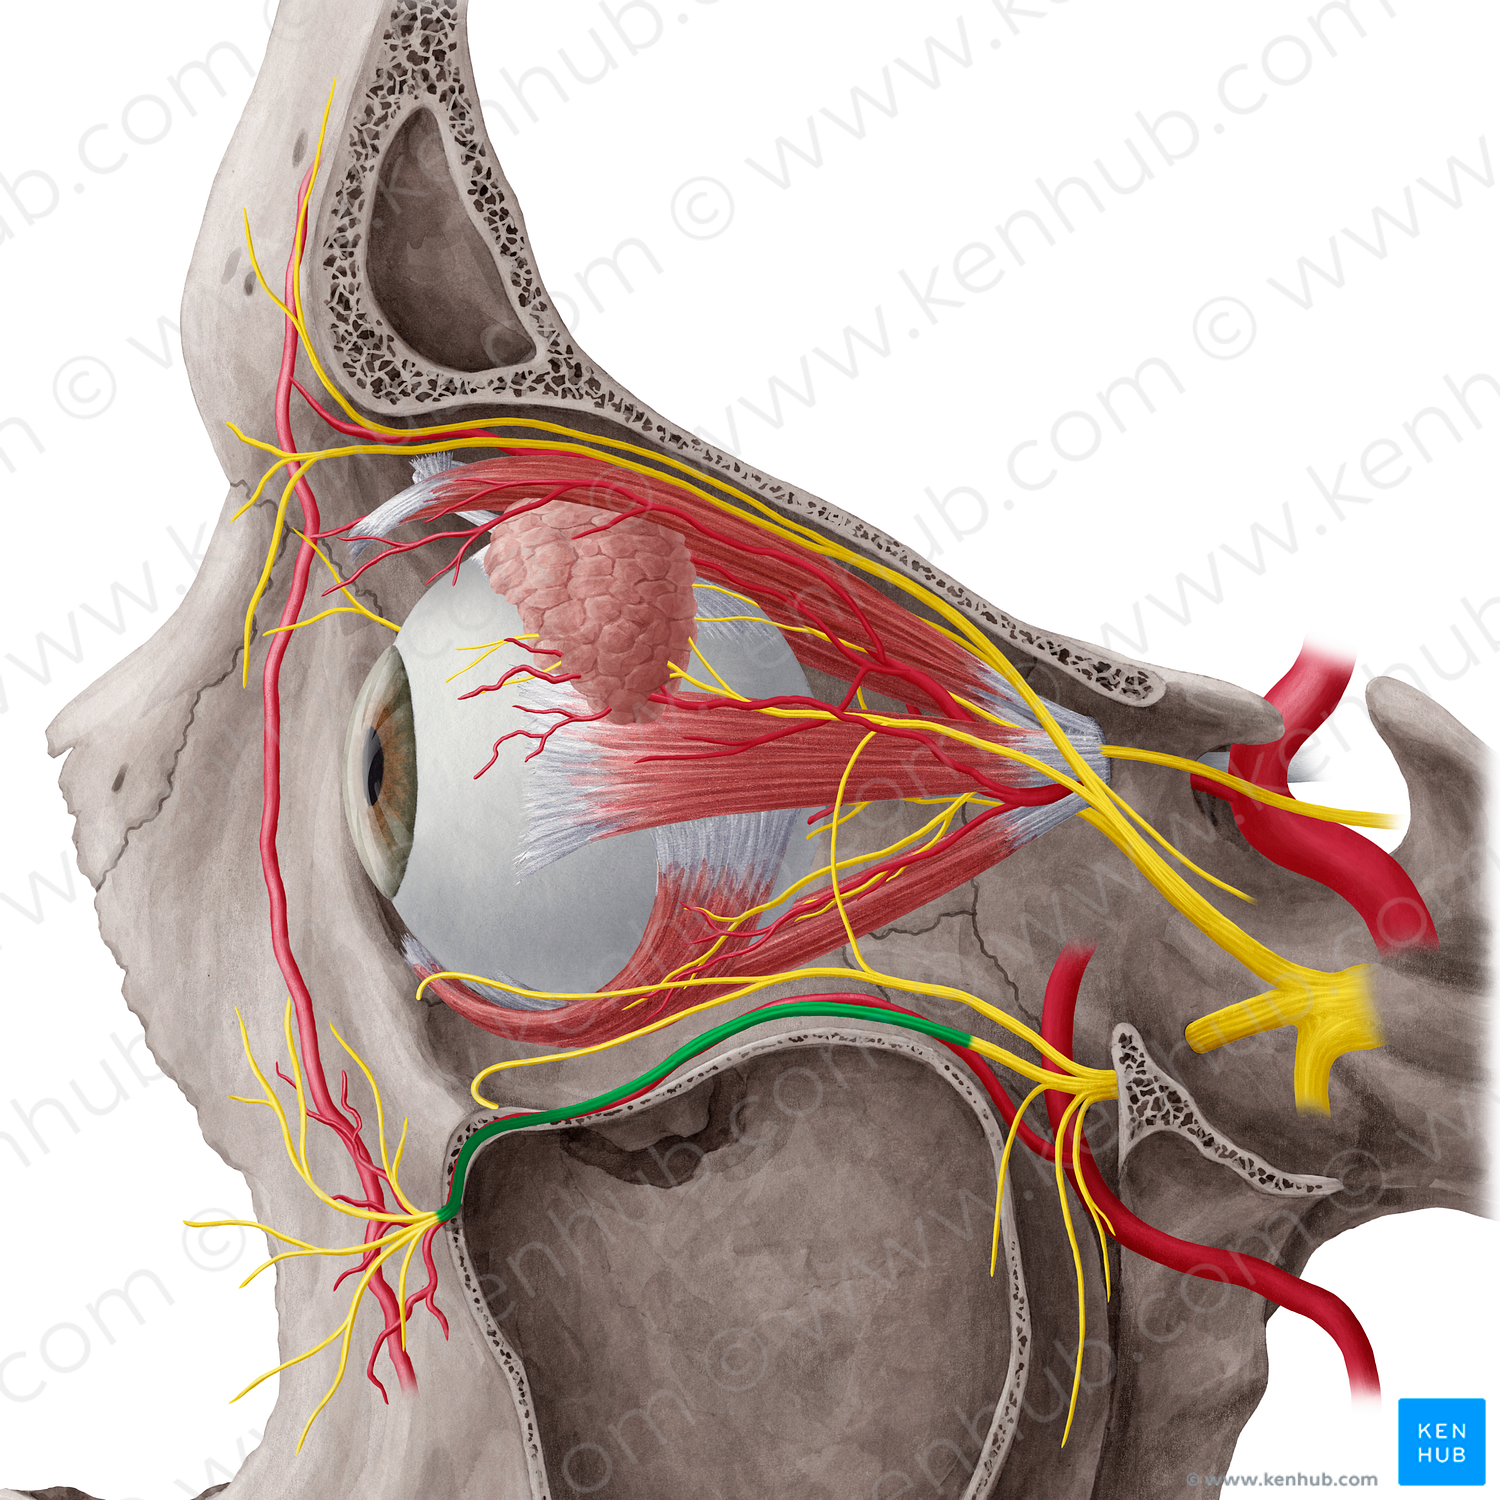 Infraorbital nerve (#6478)